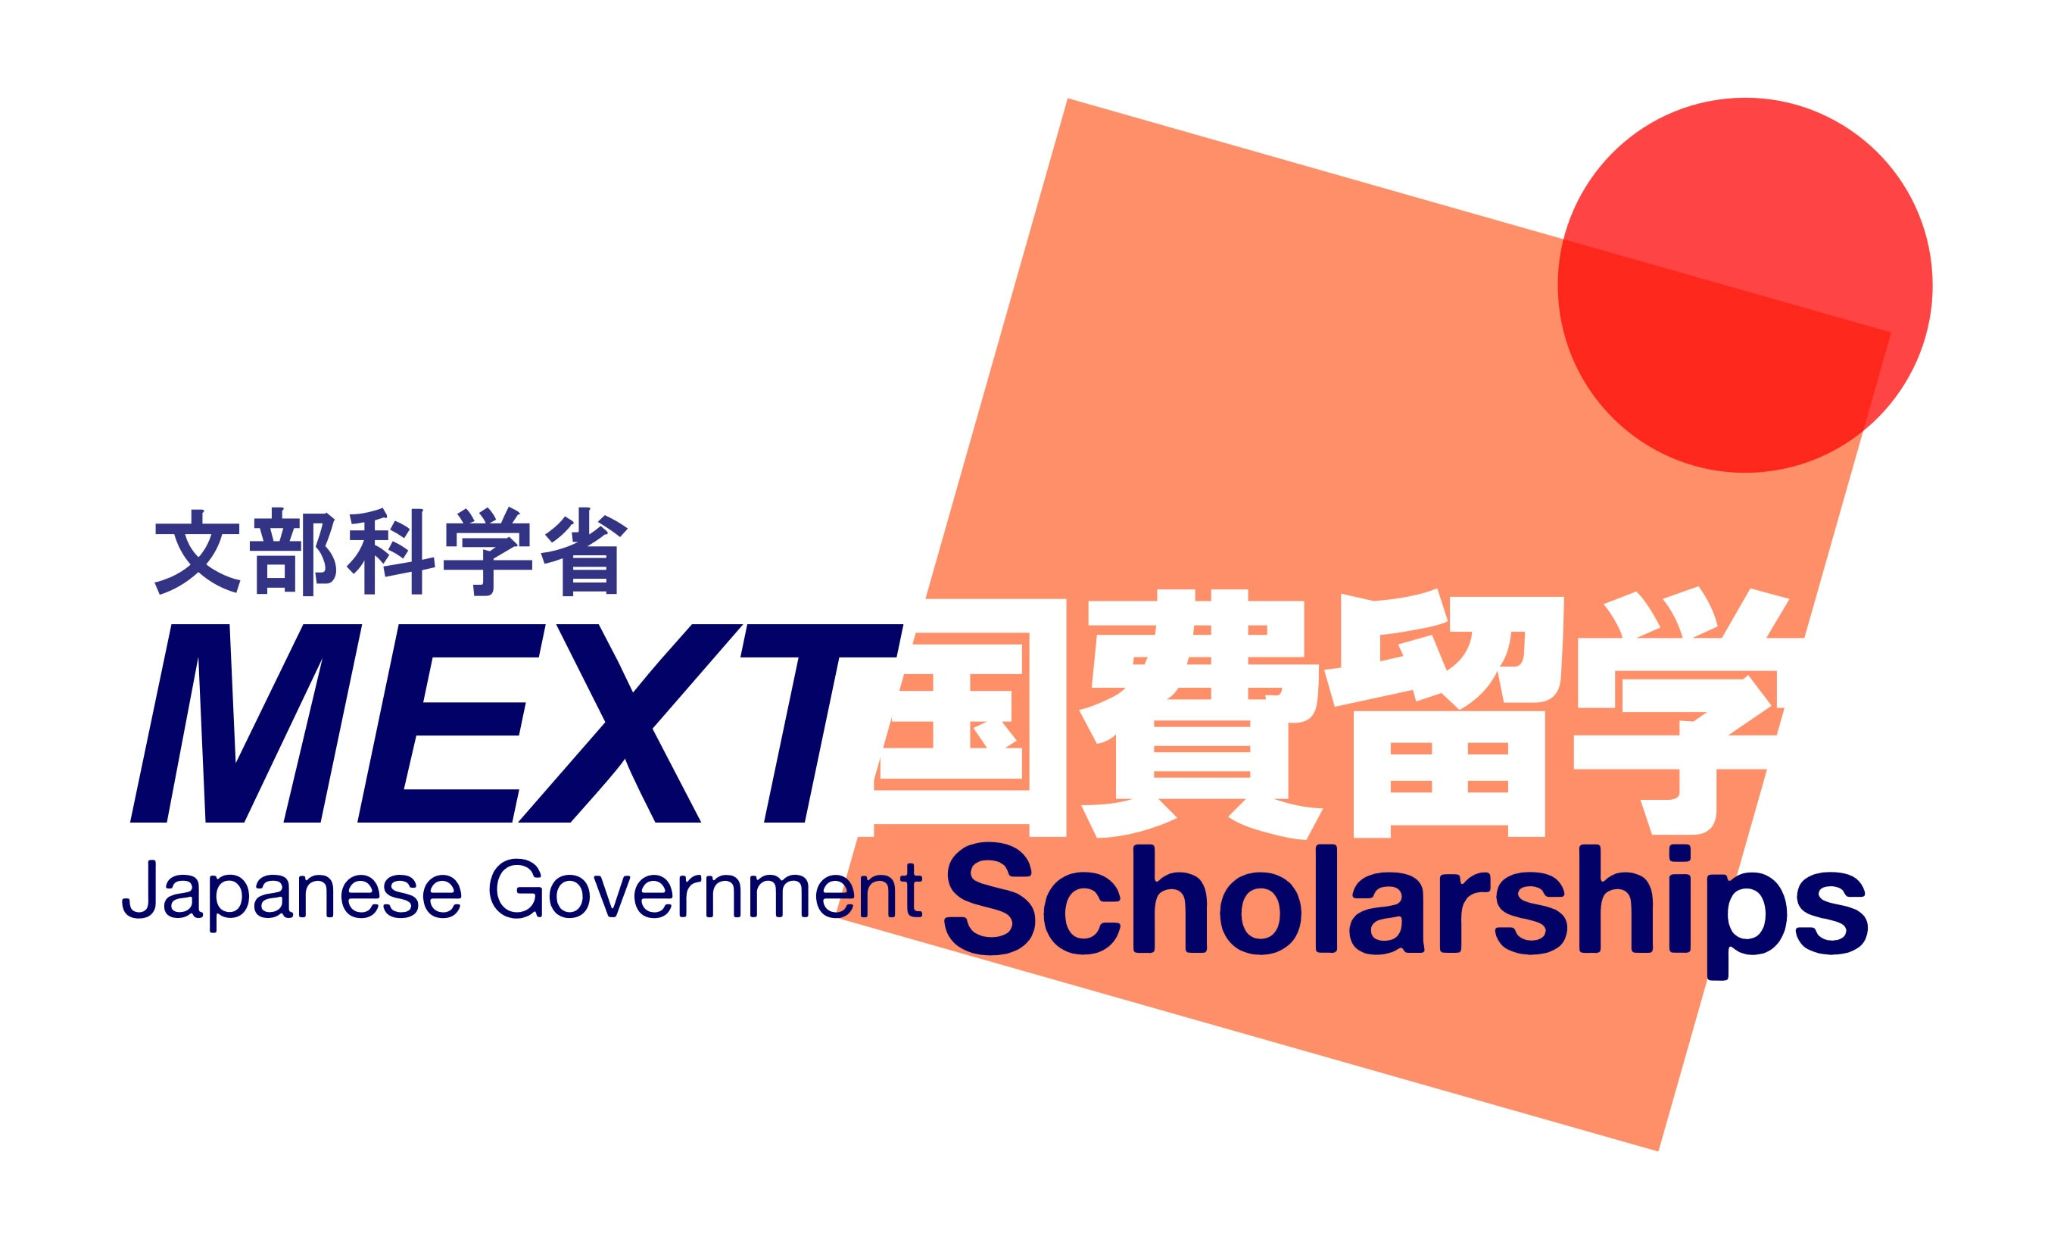 MEXT là một trong những học bổng du học danh giá và có giá trị nhất tại Nhật Bản